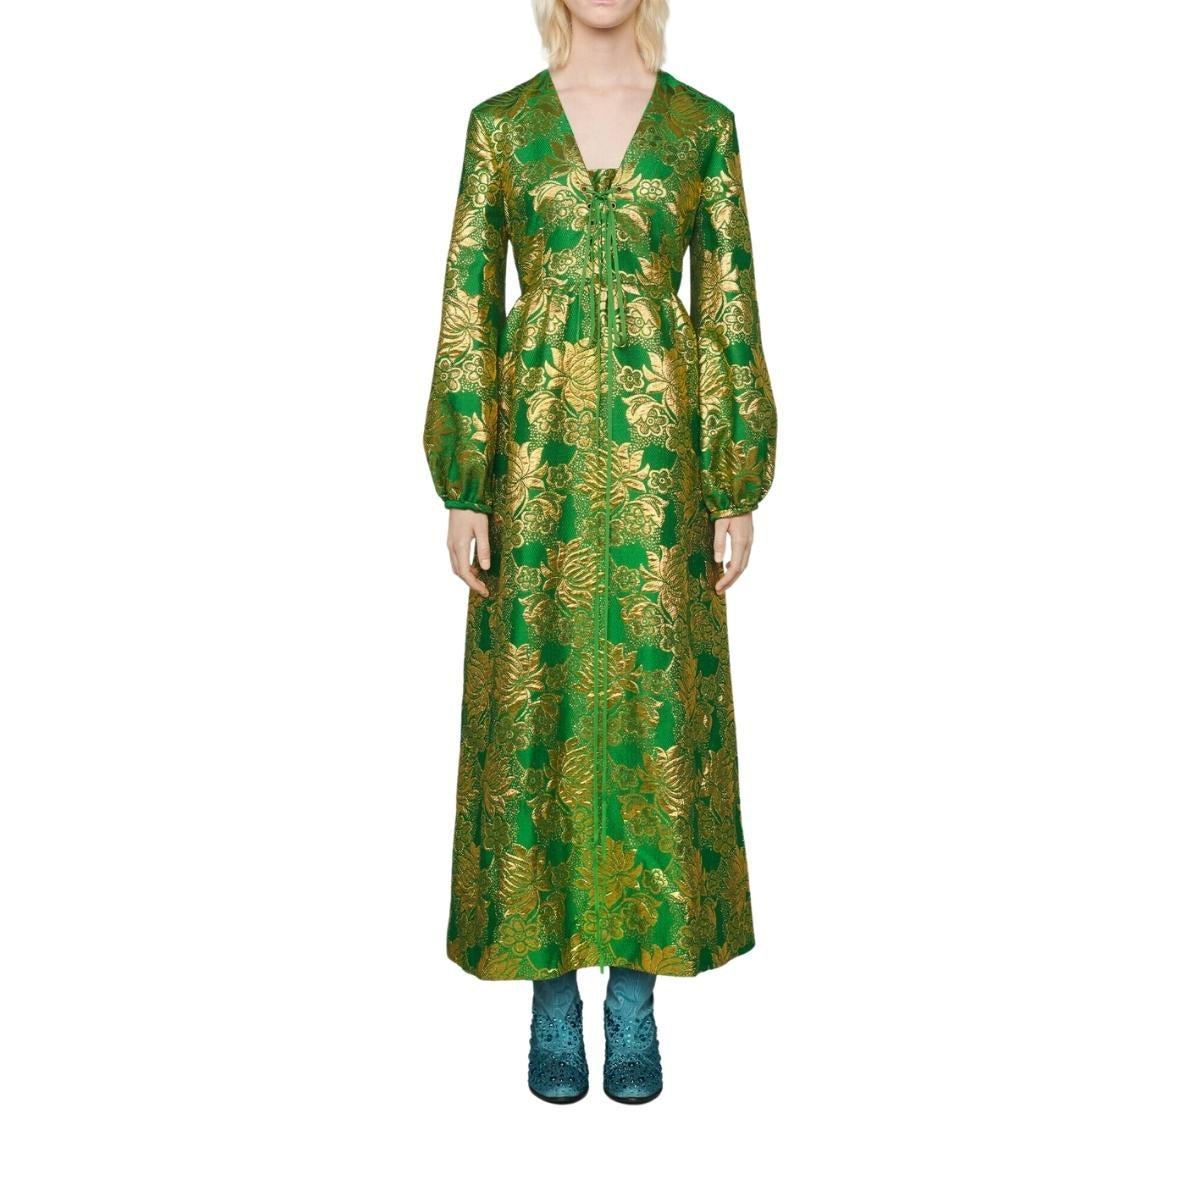 Dieses Kleid aus grüner und goldener, floral gemusterter Wolle wird durch Lamé-Details auf der Vorderseite unterstrichen. Reich an Mustern und Verzierungen
Grüner und goldener Woll-Lamé-Jacquard mit Blumenmuster
Spitze Detail
Aufgrund der